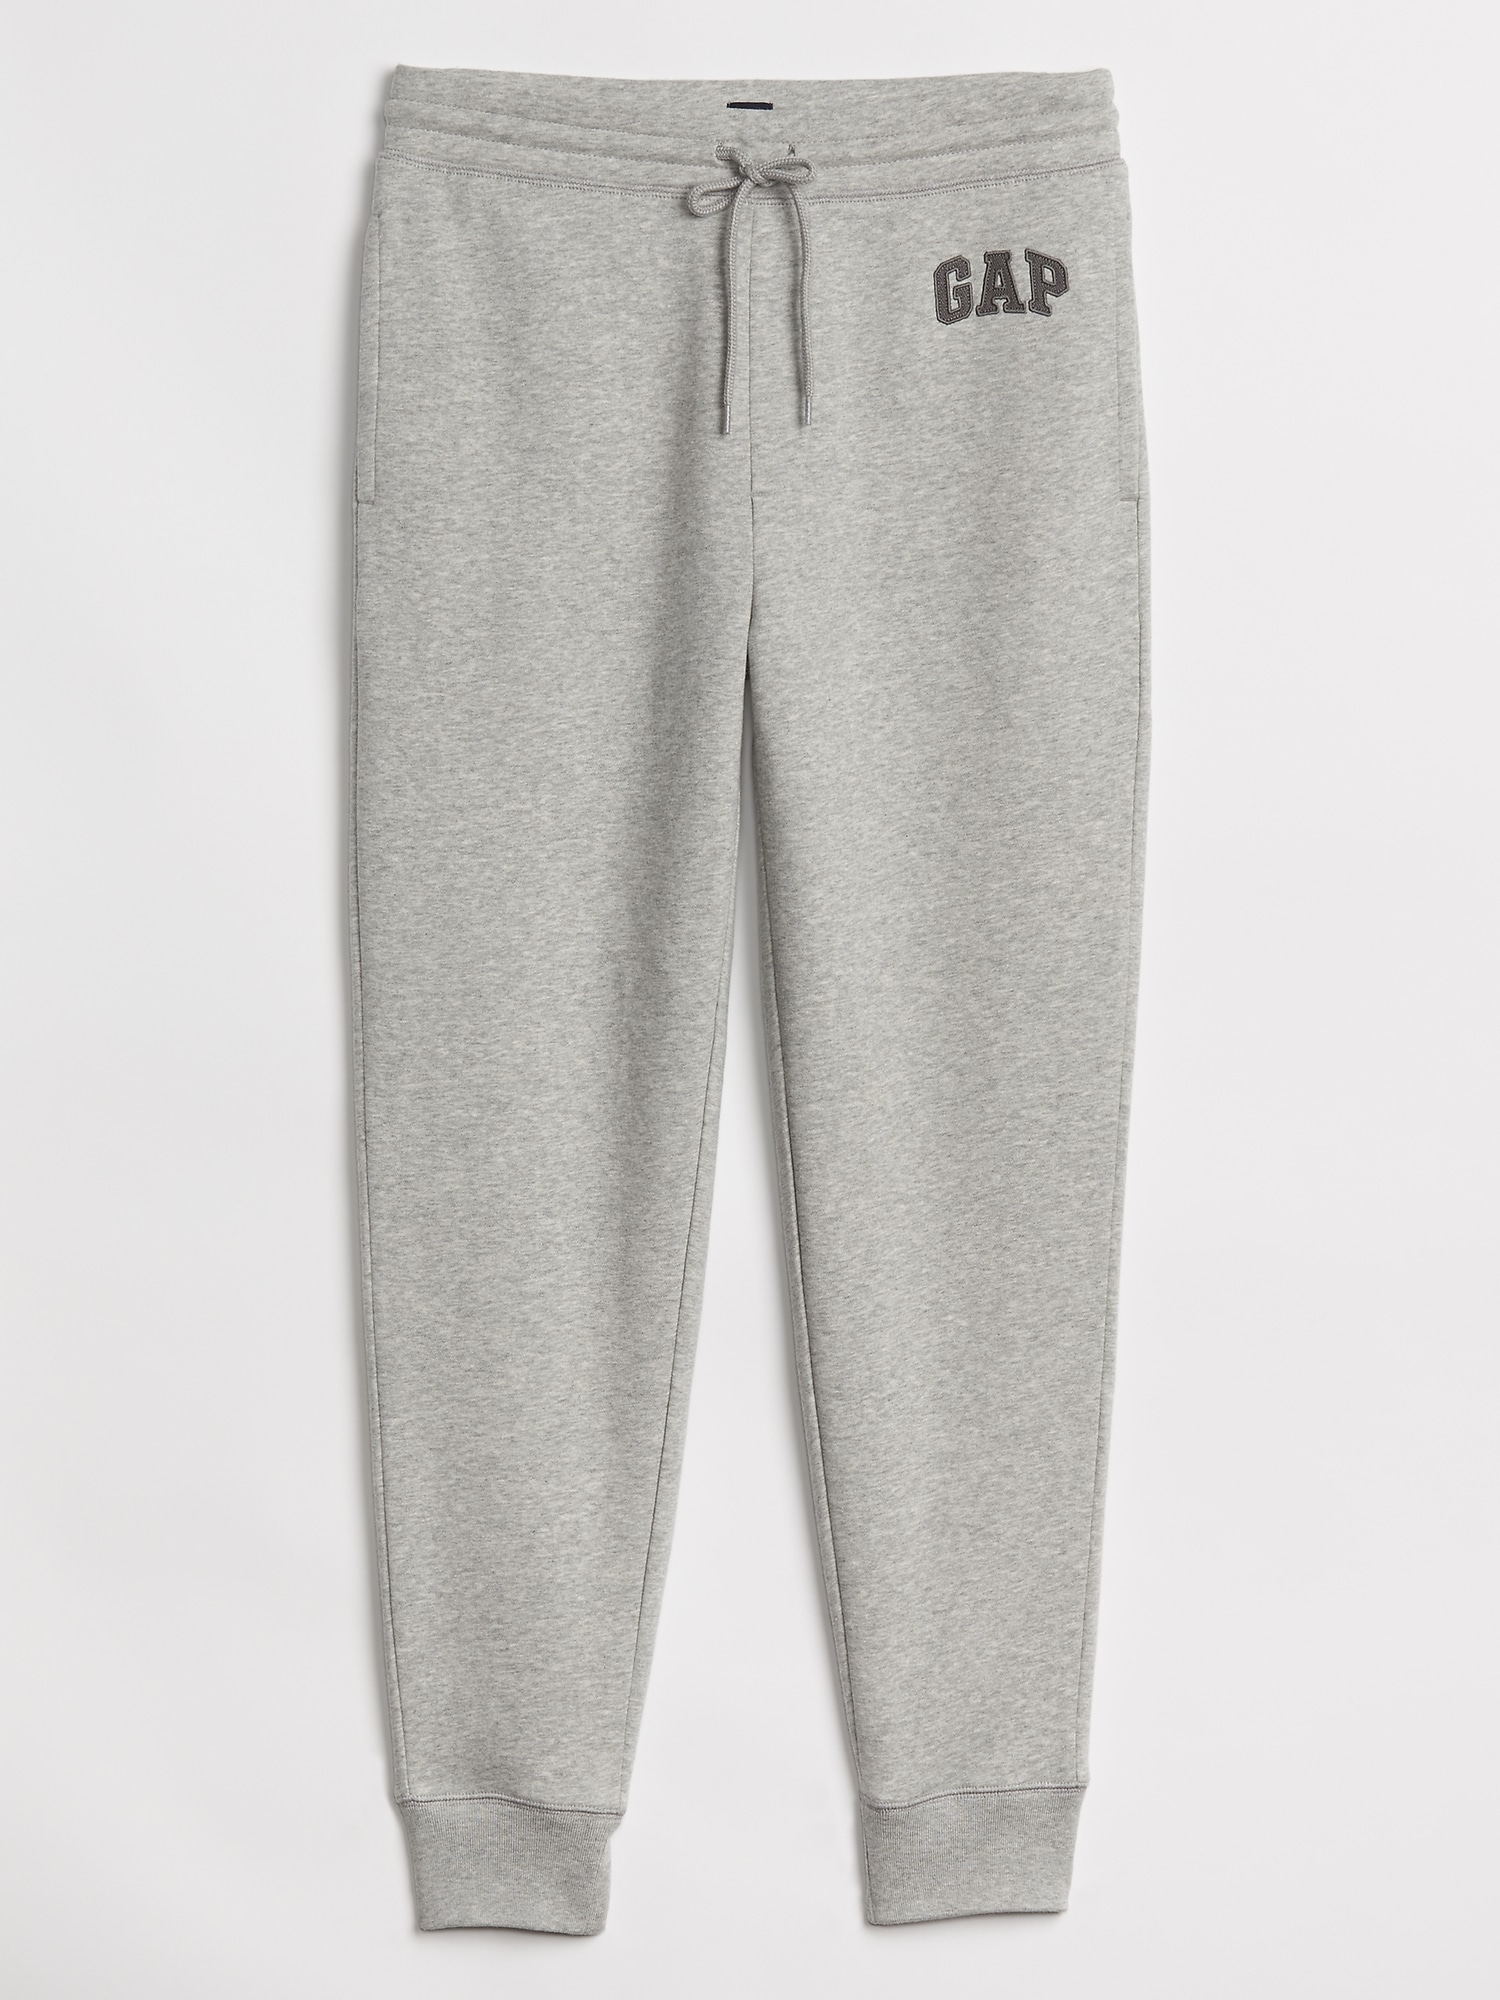 gap pants